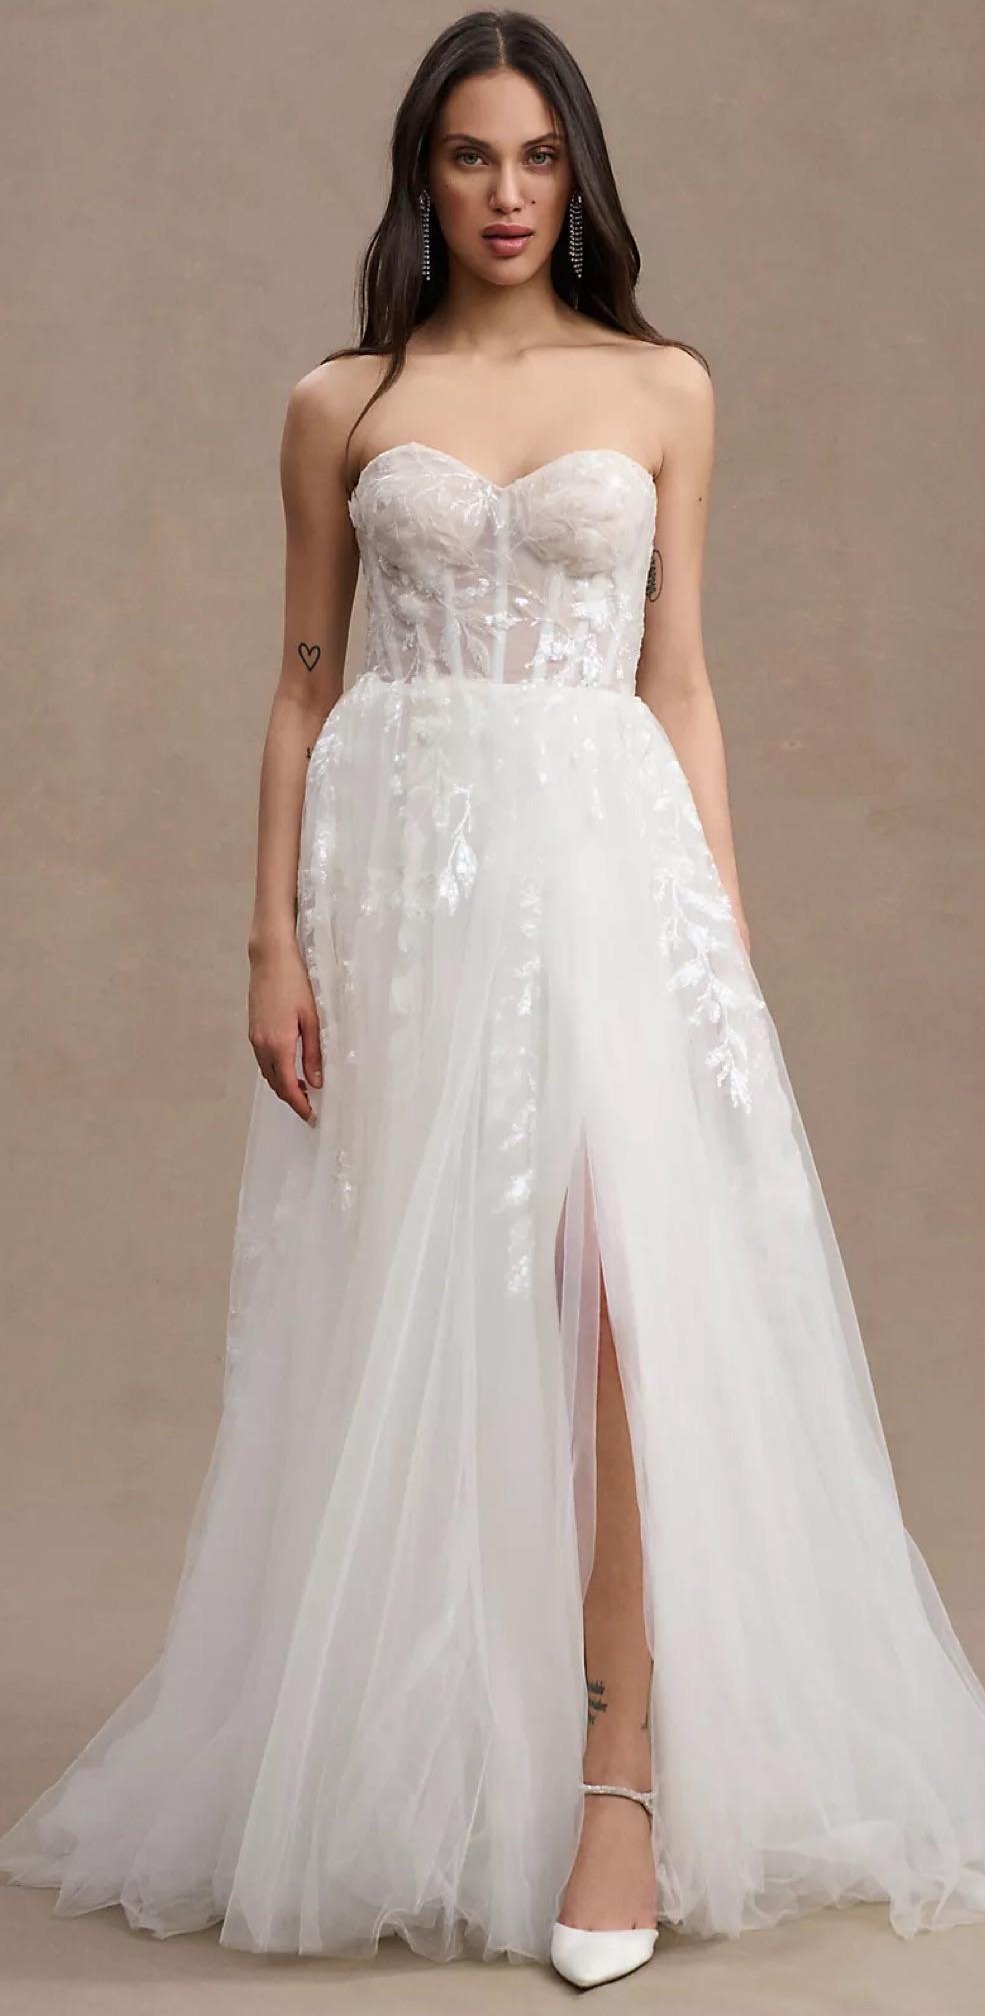 Das Kleid der Braut hatte ein ähnliches Korsett-Mieder und einen A-Linien-Chiffonrock